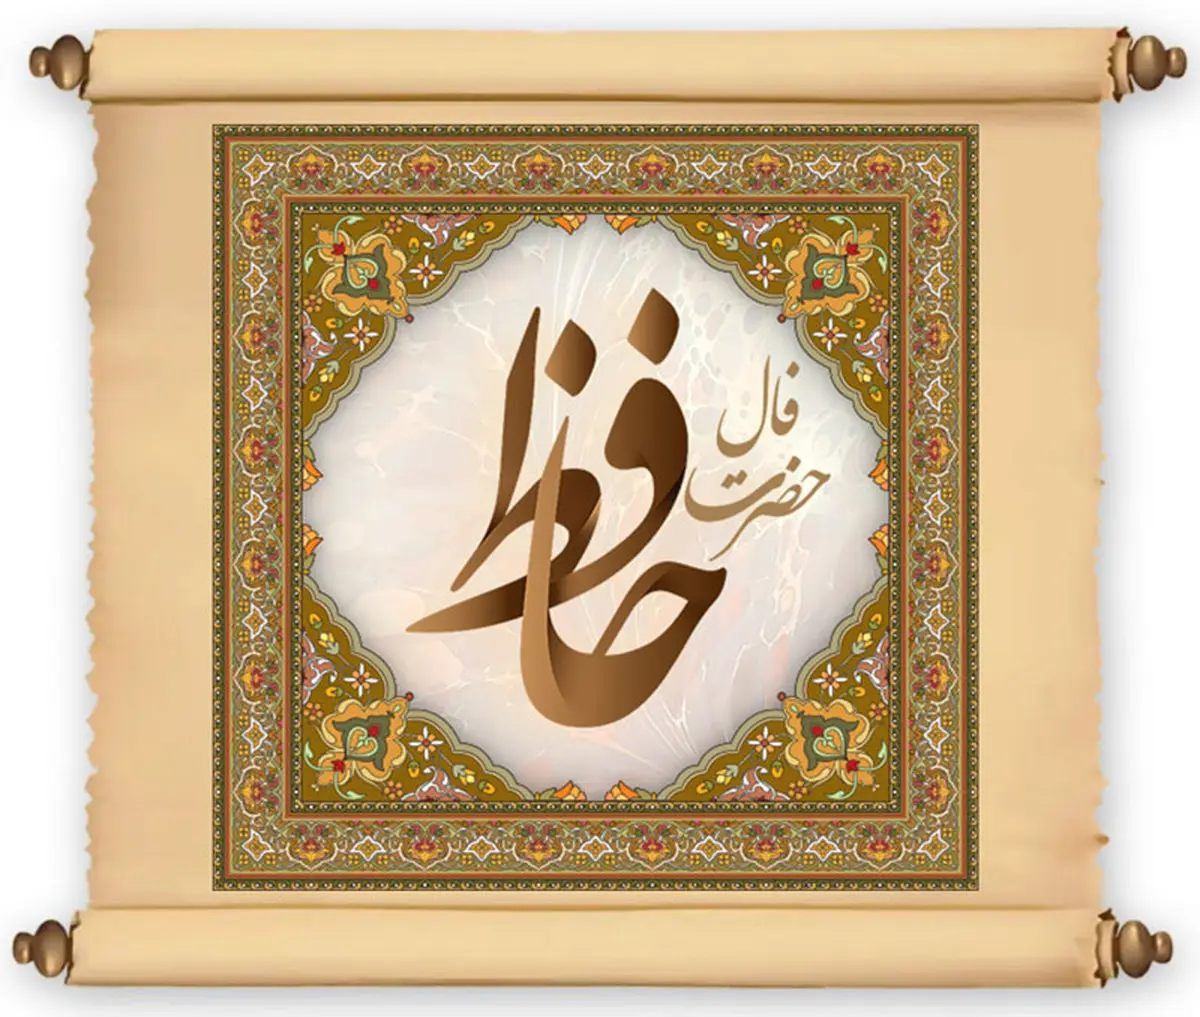 فال حافظ | فال حافظ فردا  ۱ خرداد | خبرهای خوشی برات تو راهه! + تفسیر دقیق